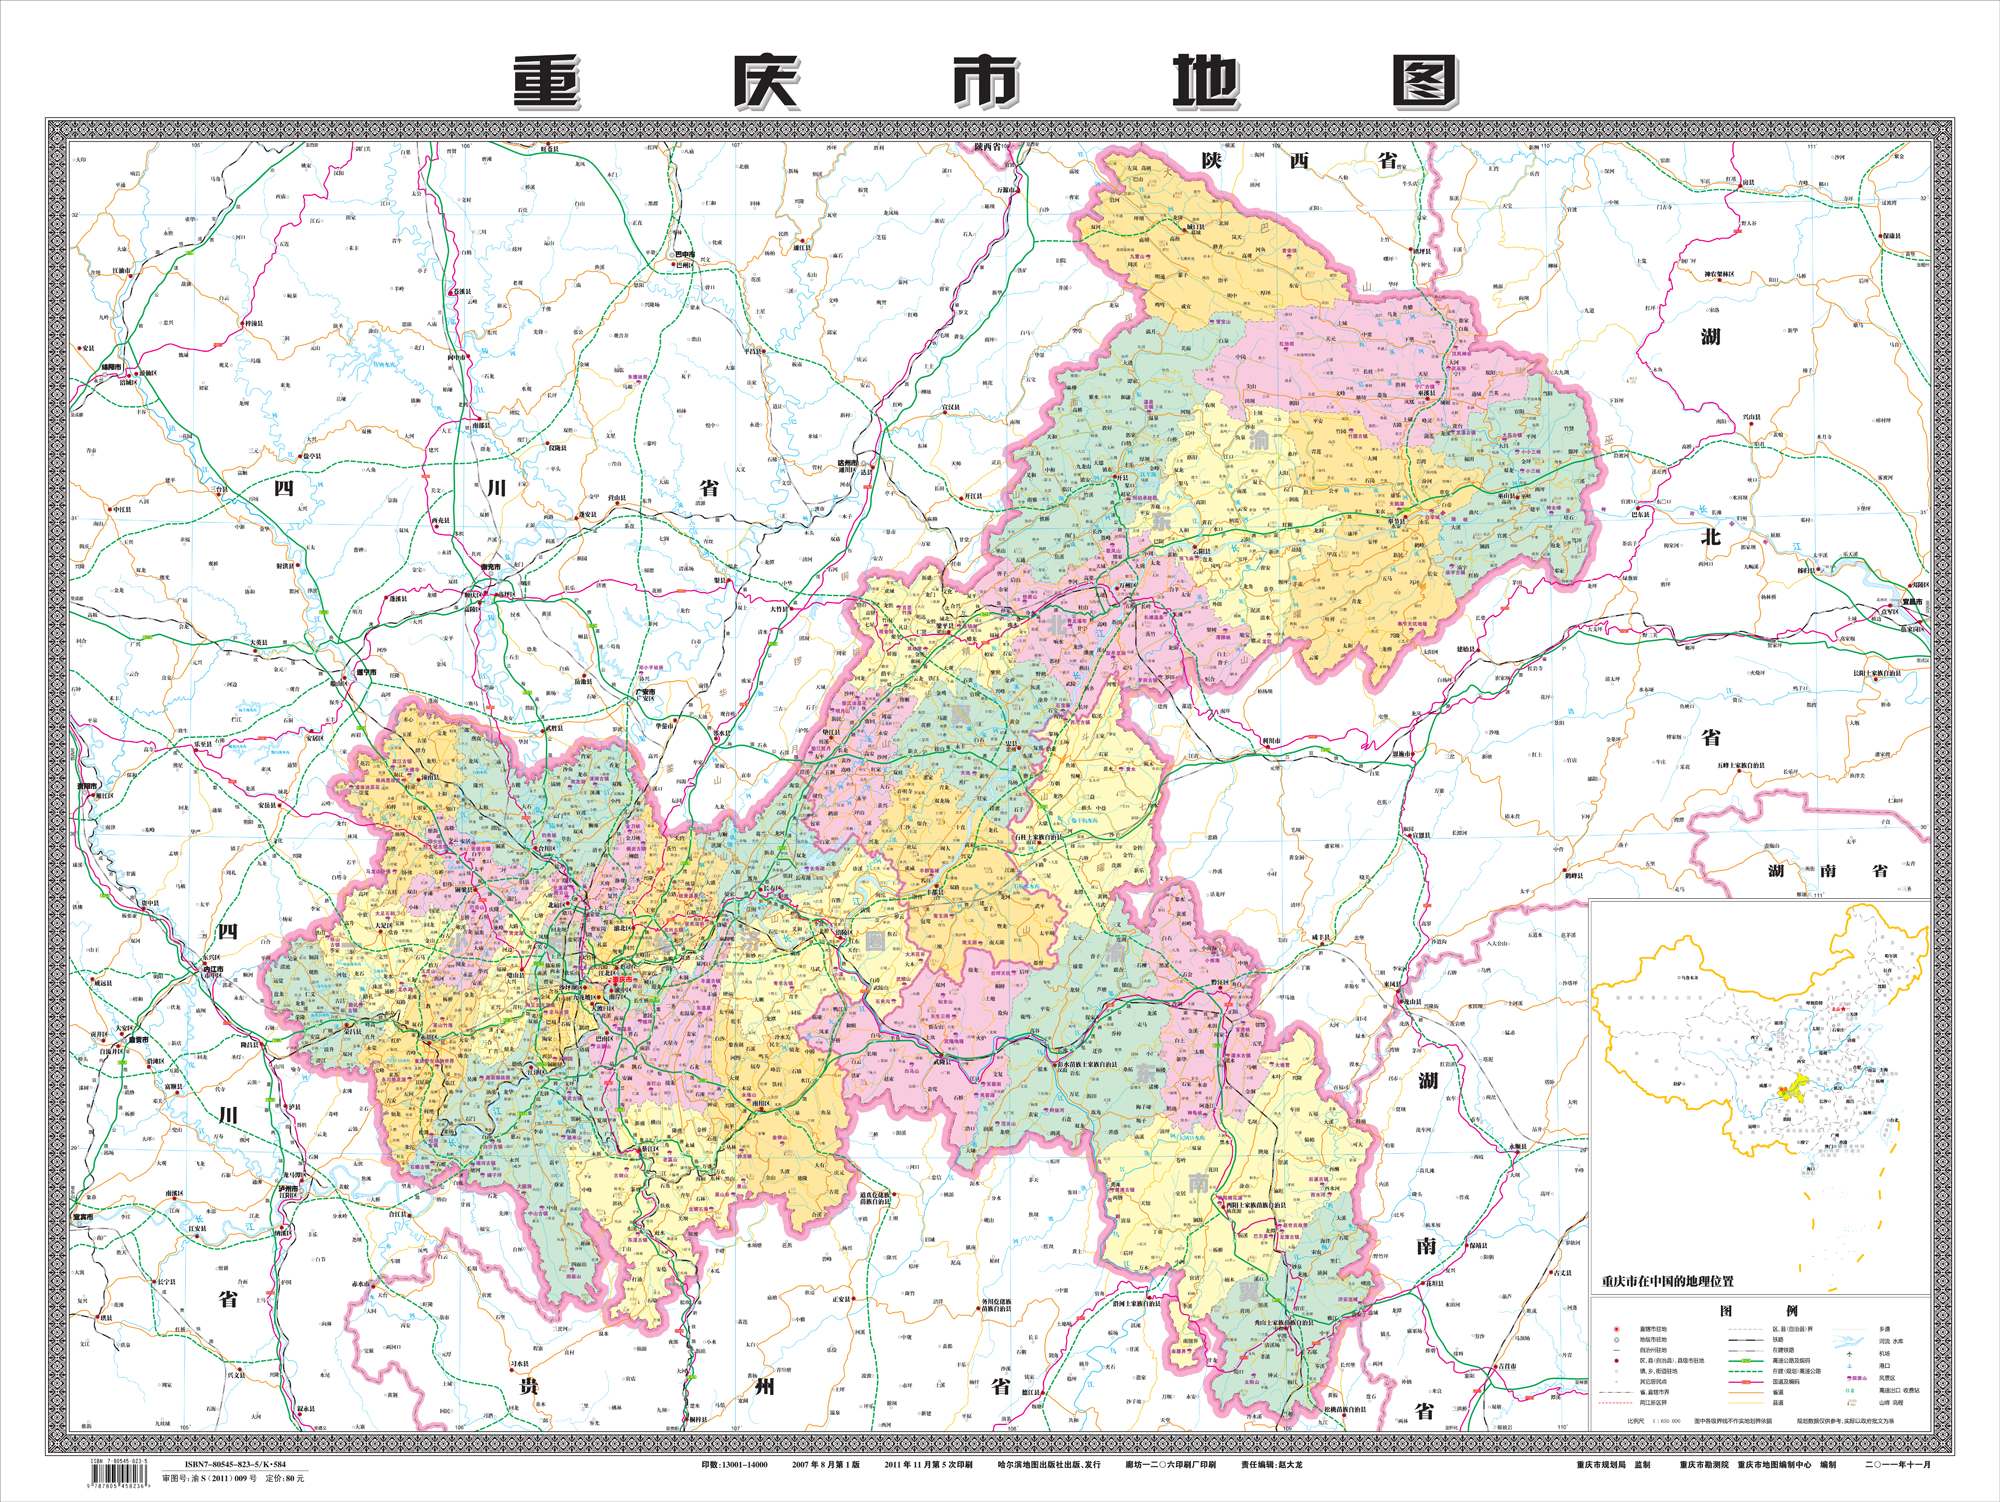 重庆市地图图片